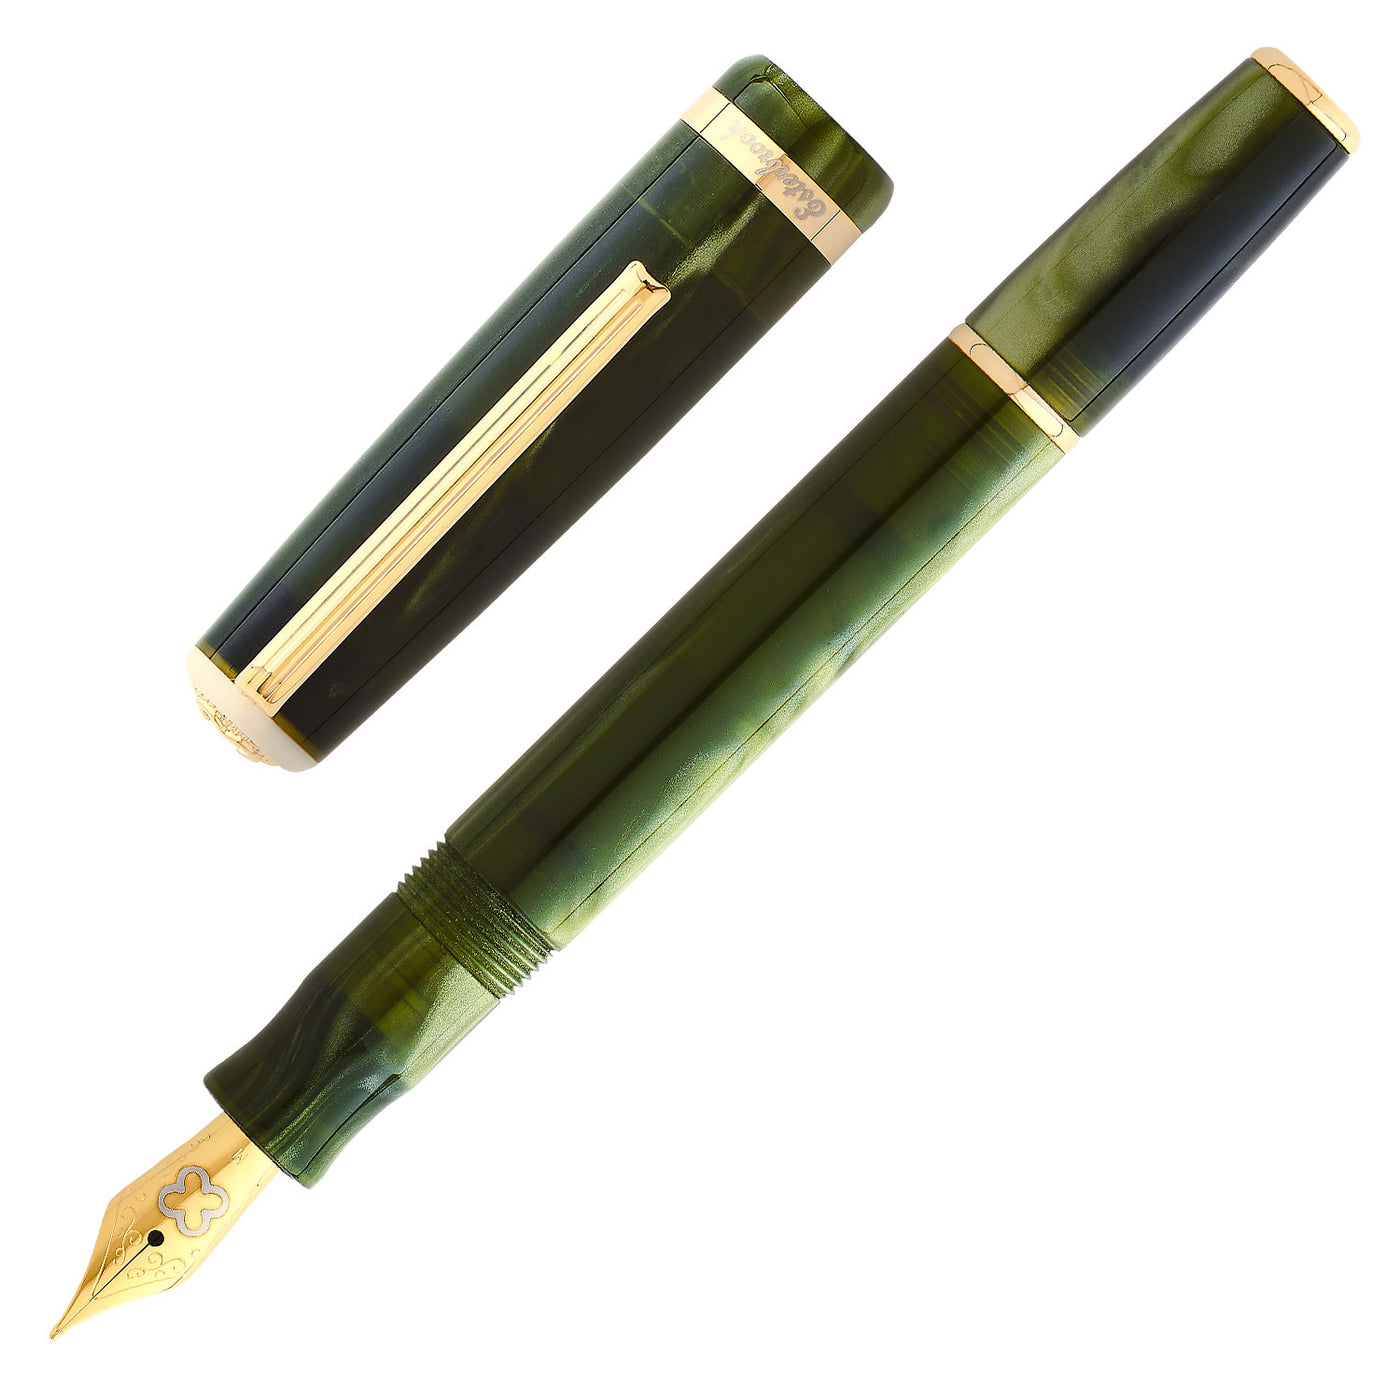 Esterbrook JR Pocket Fountain Pen - Palm Green GT 1